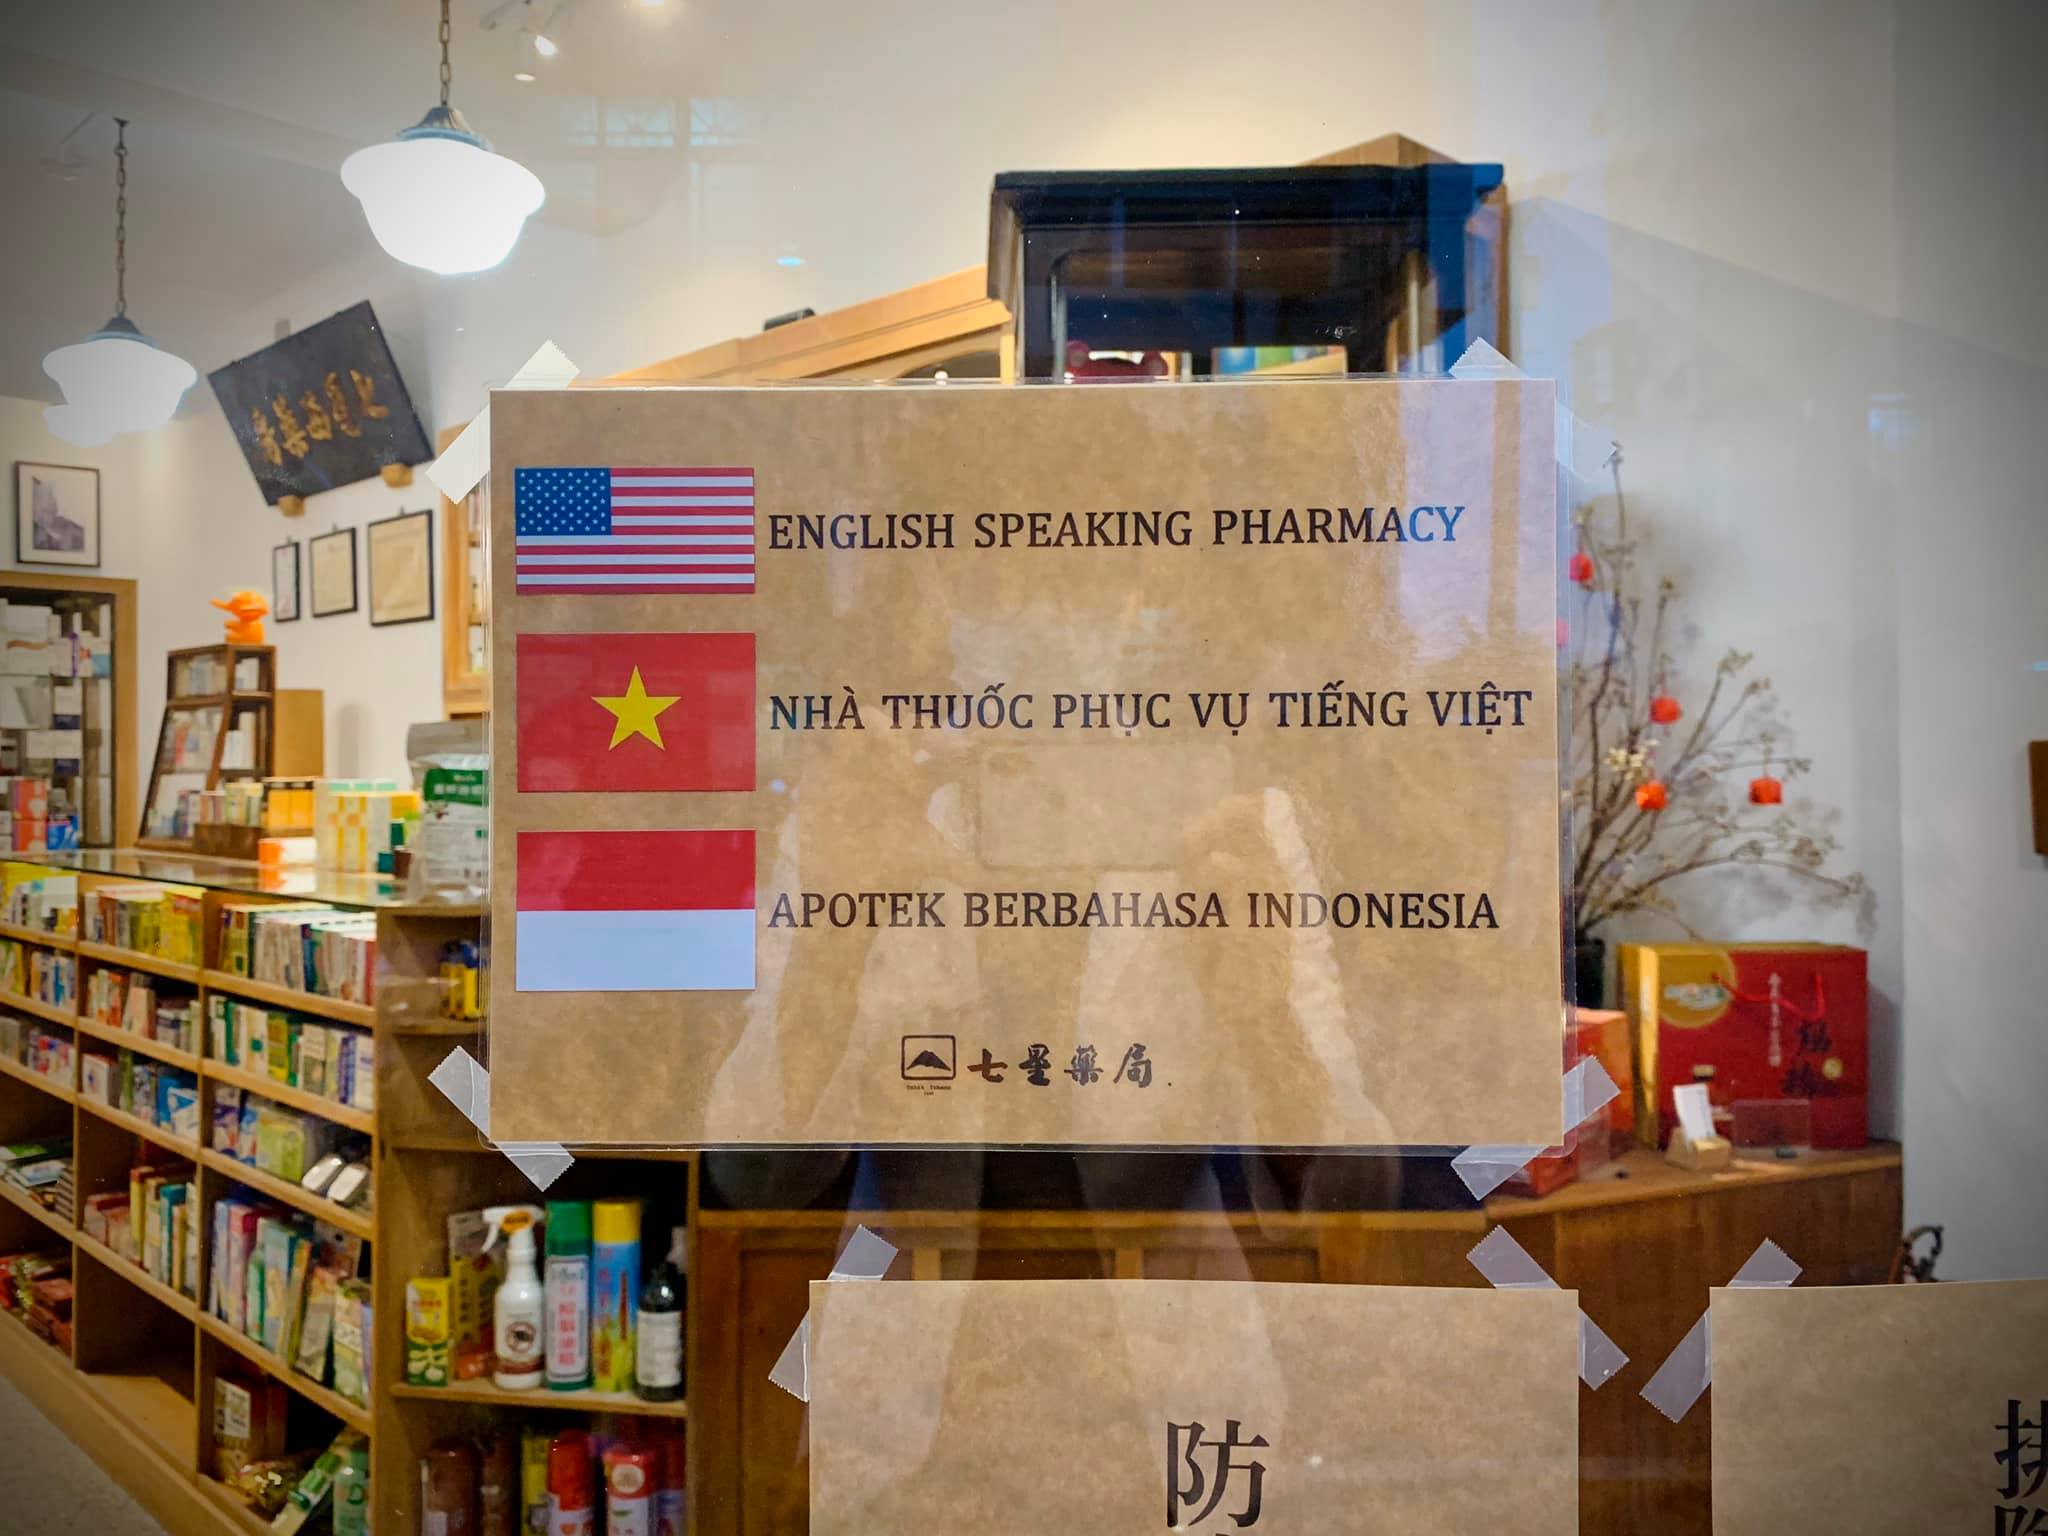 tiệm thuốc Thất Tinh tại Gia Nghĩa thân thiện với các ngôn ngữ tiếng Anh, Việt, Indonesia (ảnh từ Facebook tiệm thuốc Thất Tinh).